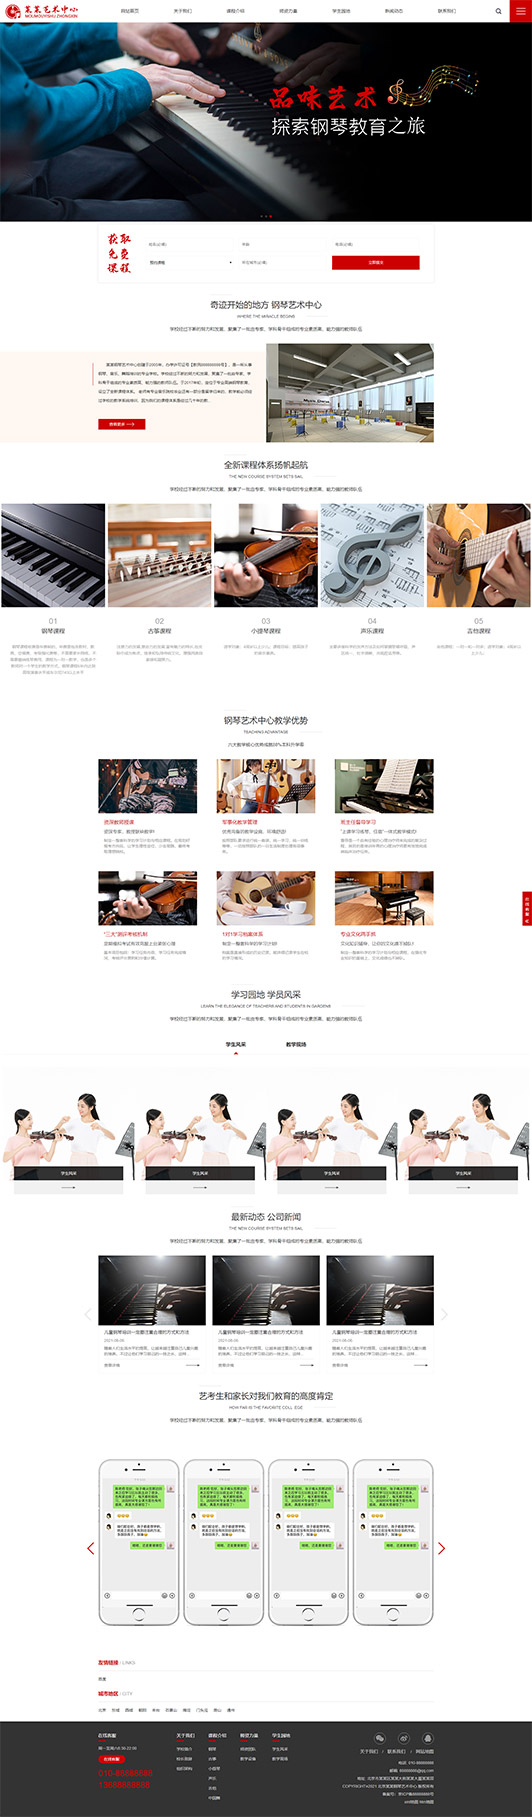 洛阳钢琴艺术培训公司响应式企业网站